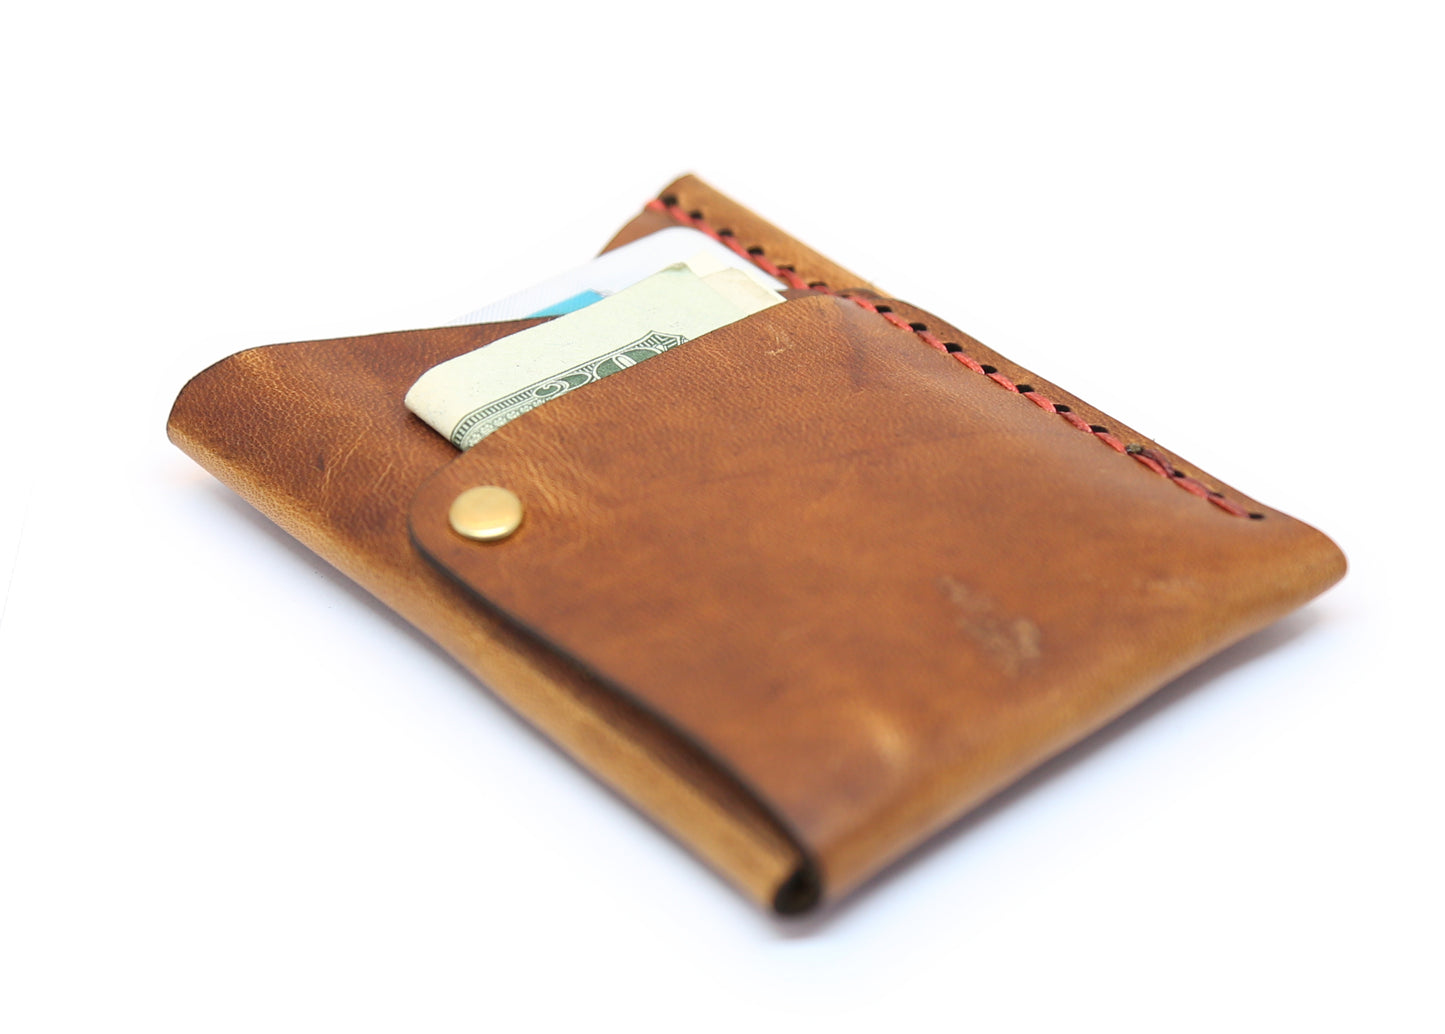 Big Spender Leather Wallet